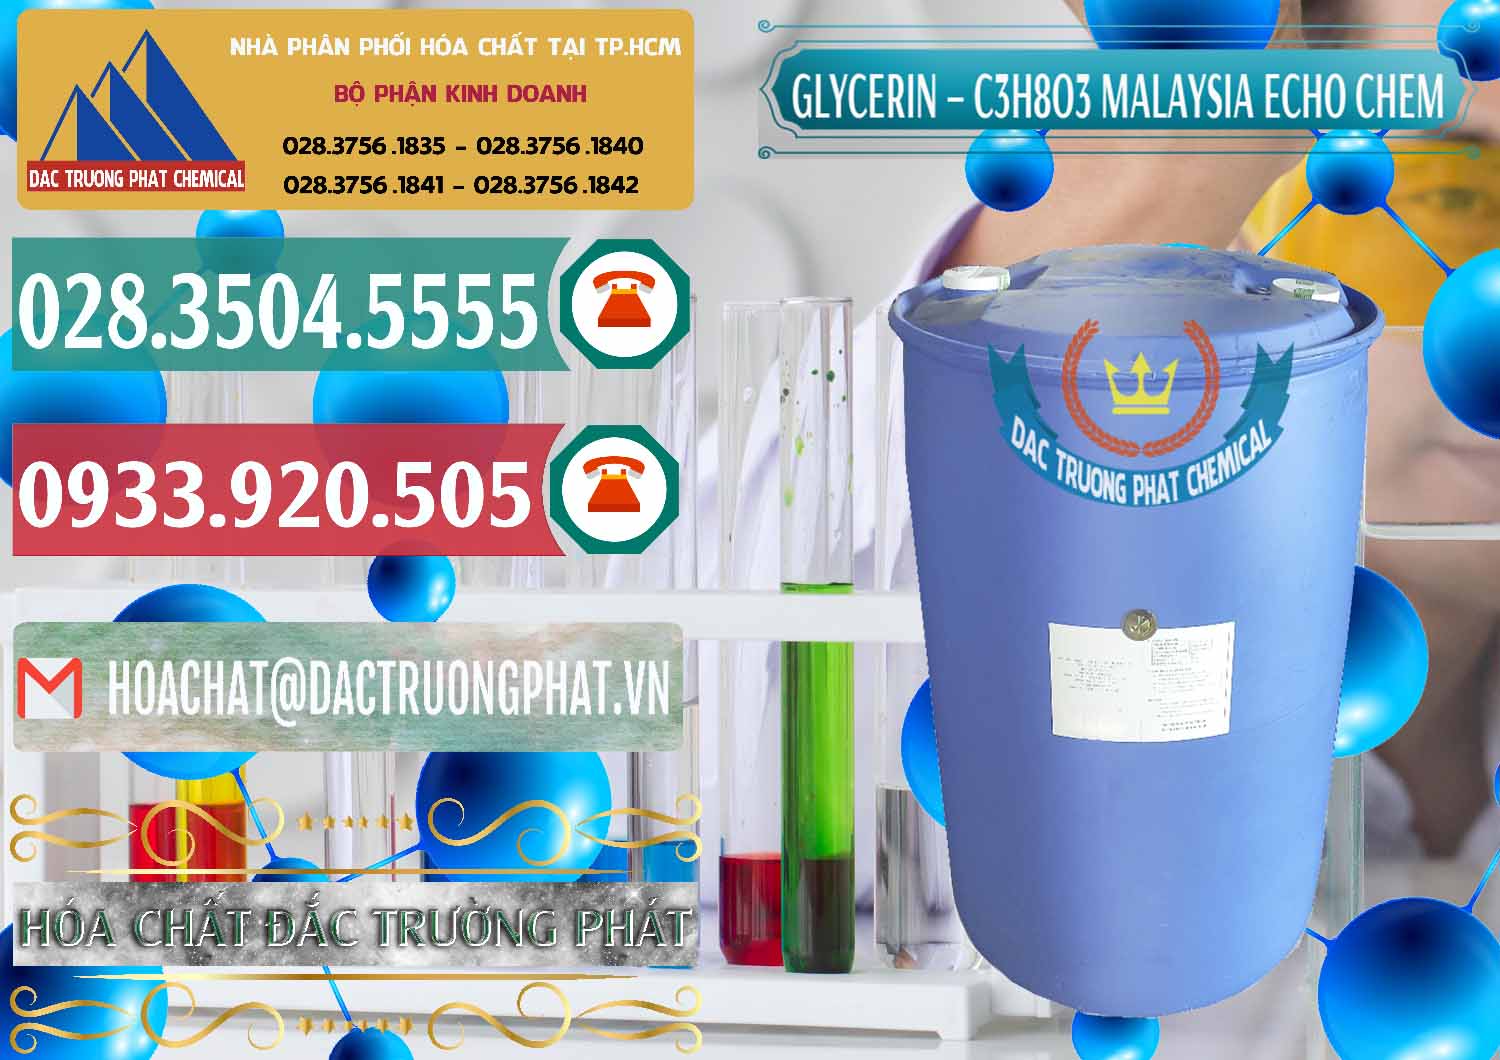 Đơn vị chuyên cung ứng - bán C3H8O3 - Glycerin 99.7% Echo Chem Malaysia - 0273 - Đơn vị cung cấp - nhập khẩu hóa chất tại TP.HCM - muabanhoachat.vn